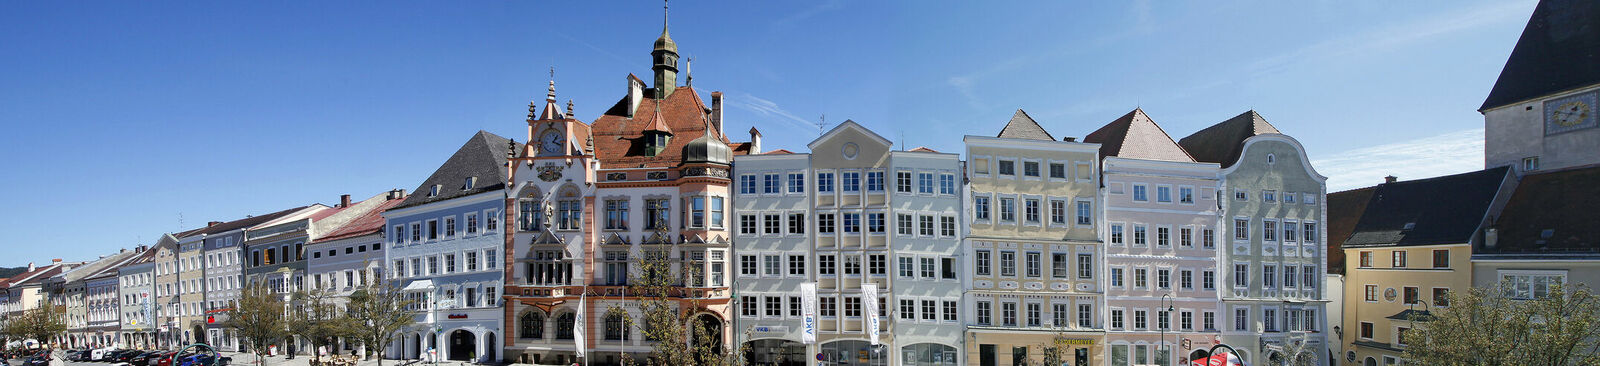 Kleine historische Städte in Österreich